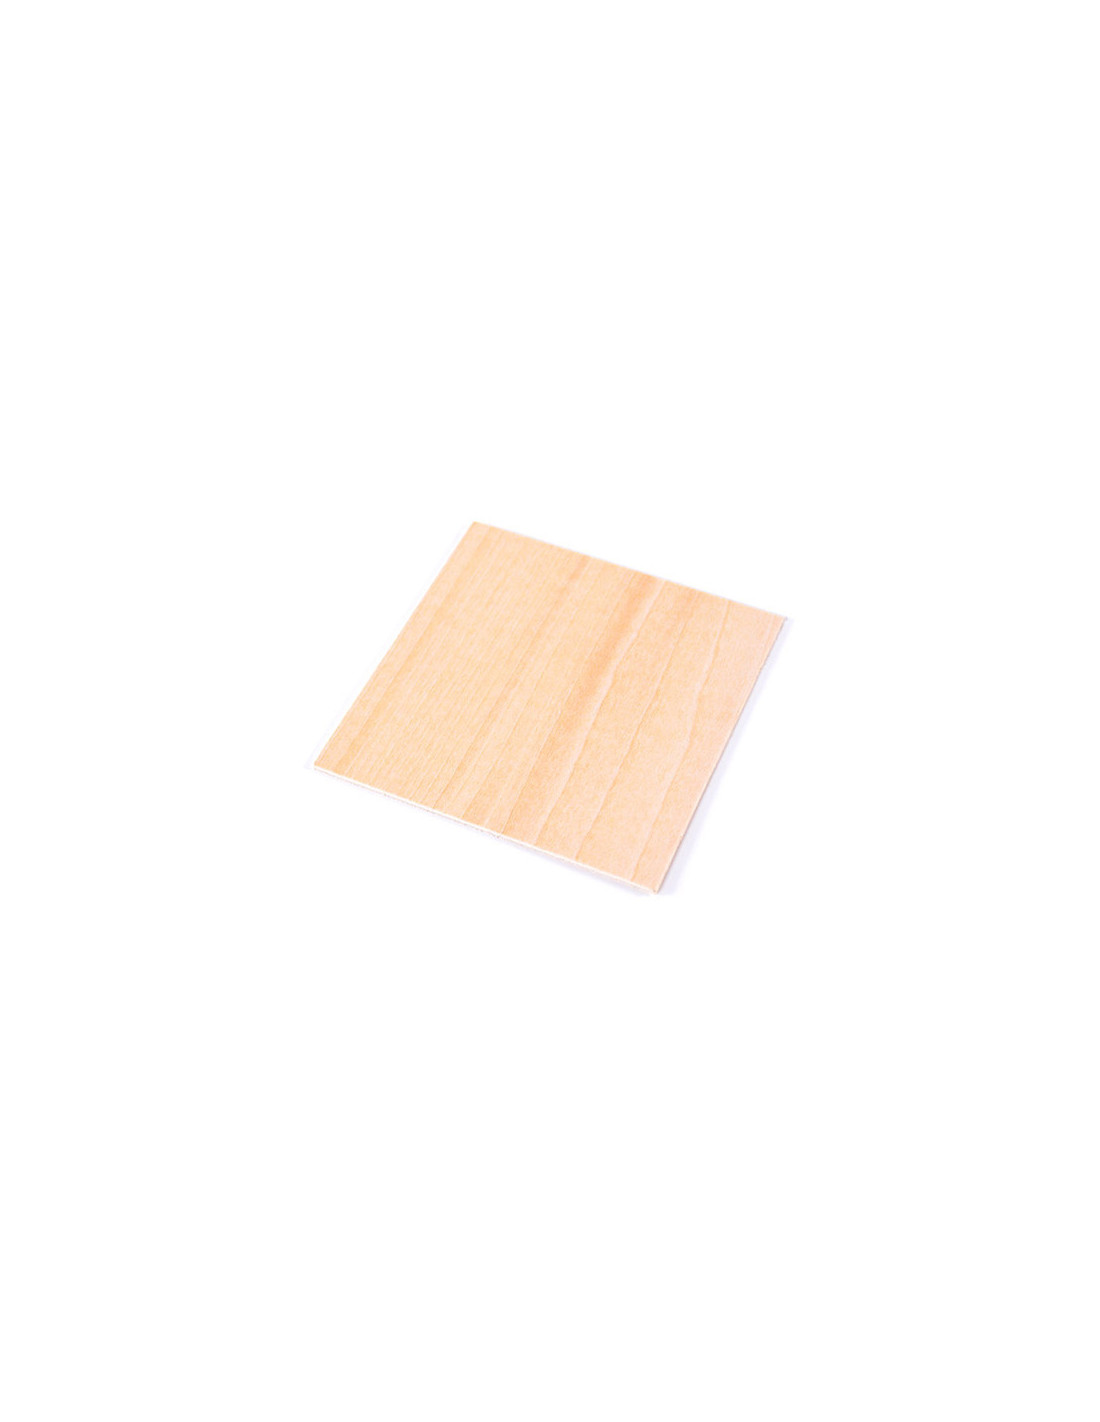 Snapmaker carrés de bois vierges (paquet de 10)